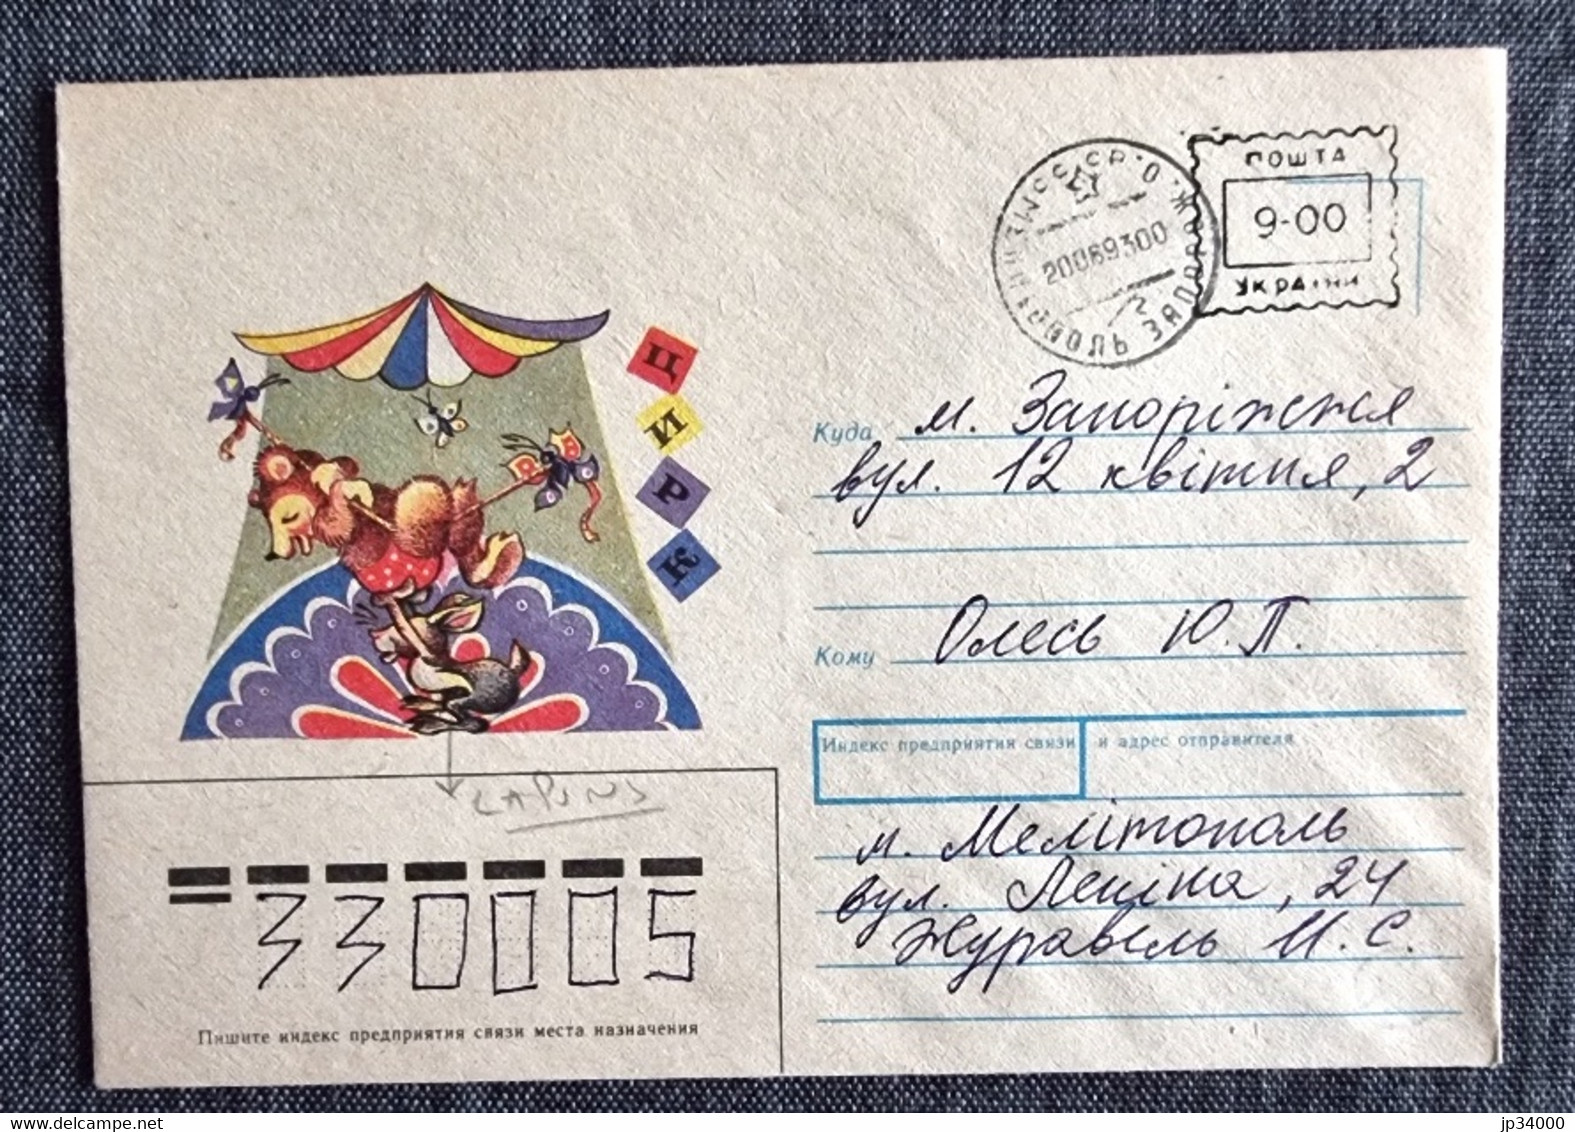 RUSSIE-URSS Lapins, Lapin, Rabbit, Conejo. Entier Postal Emis En 1990 (ayant Circulé) 2 - Lapins